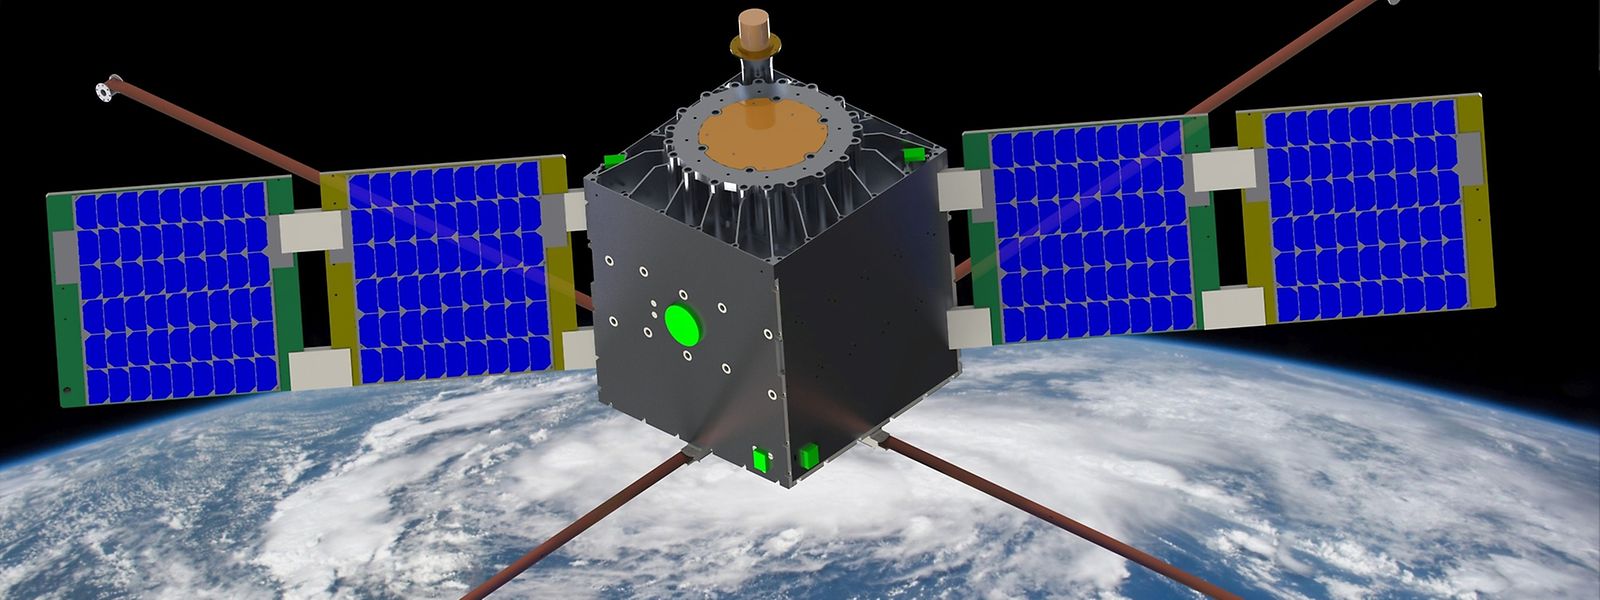 Ab 2018 möchte LuxSpace Satelliten der Triton-Plattform in den Orbit bringen. Im Gegensatz zu den bisherigen Mikrosatelliten soll Triton unterschiedliche Payloads zulassen und als Basis für neue, innovative Dienstleistungen dienen.